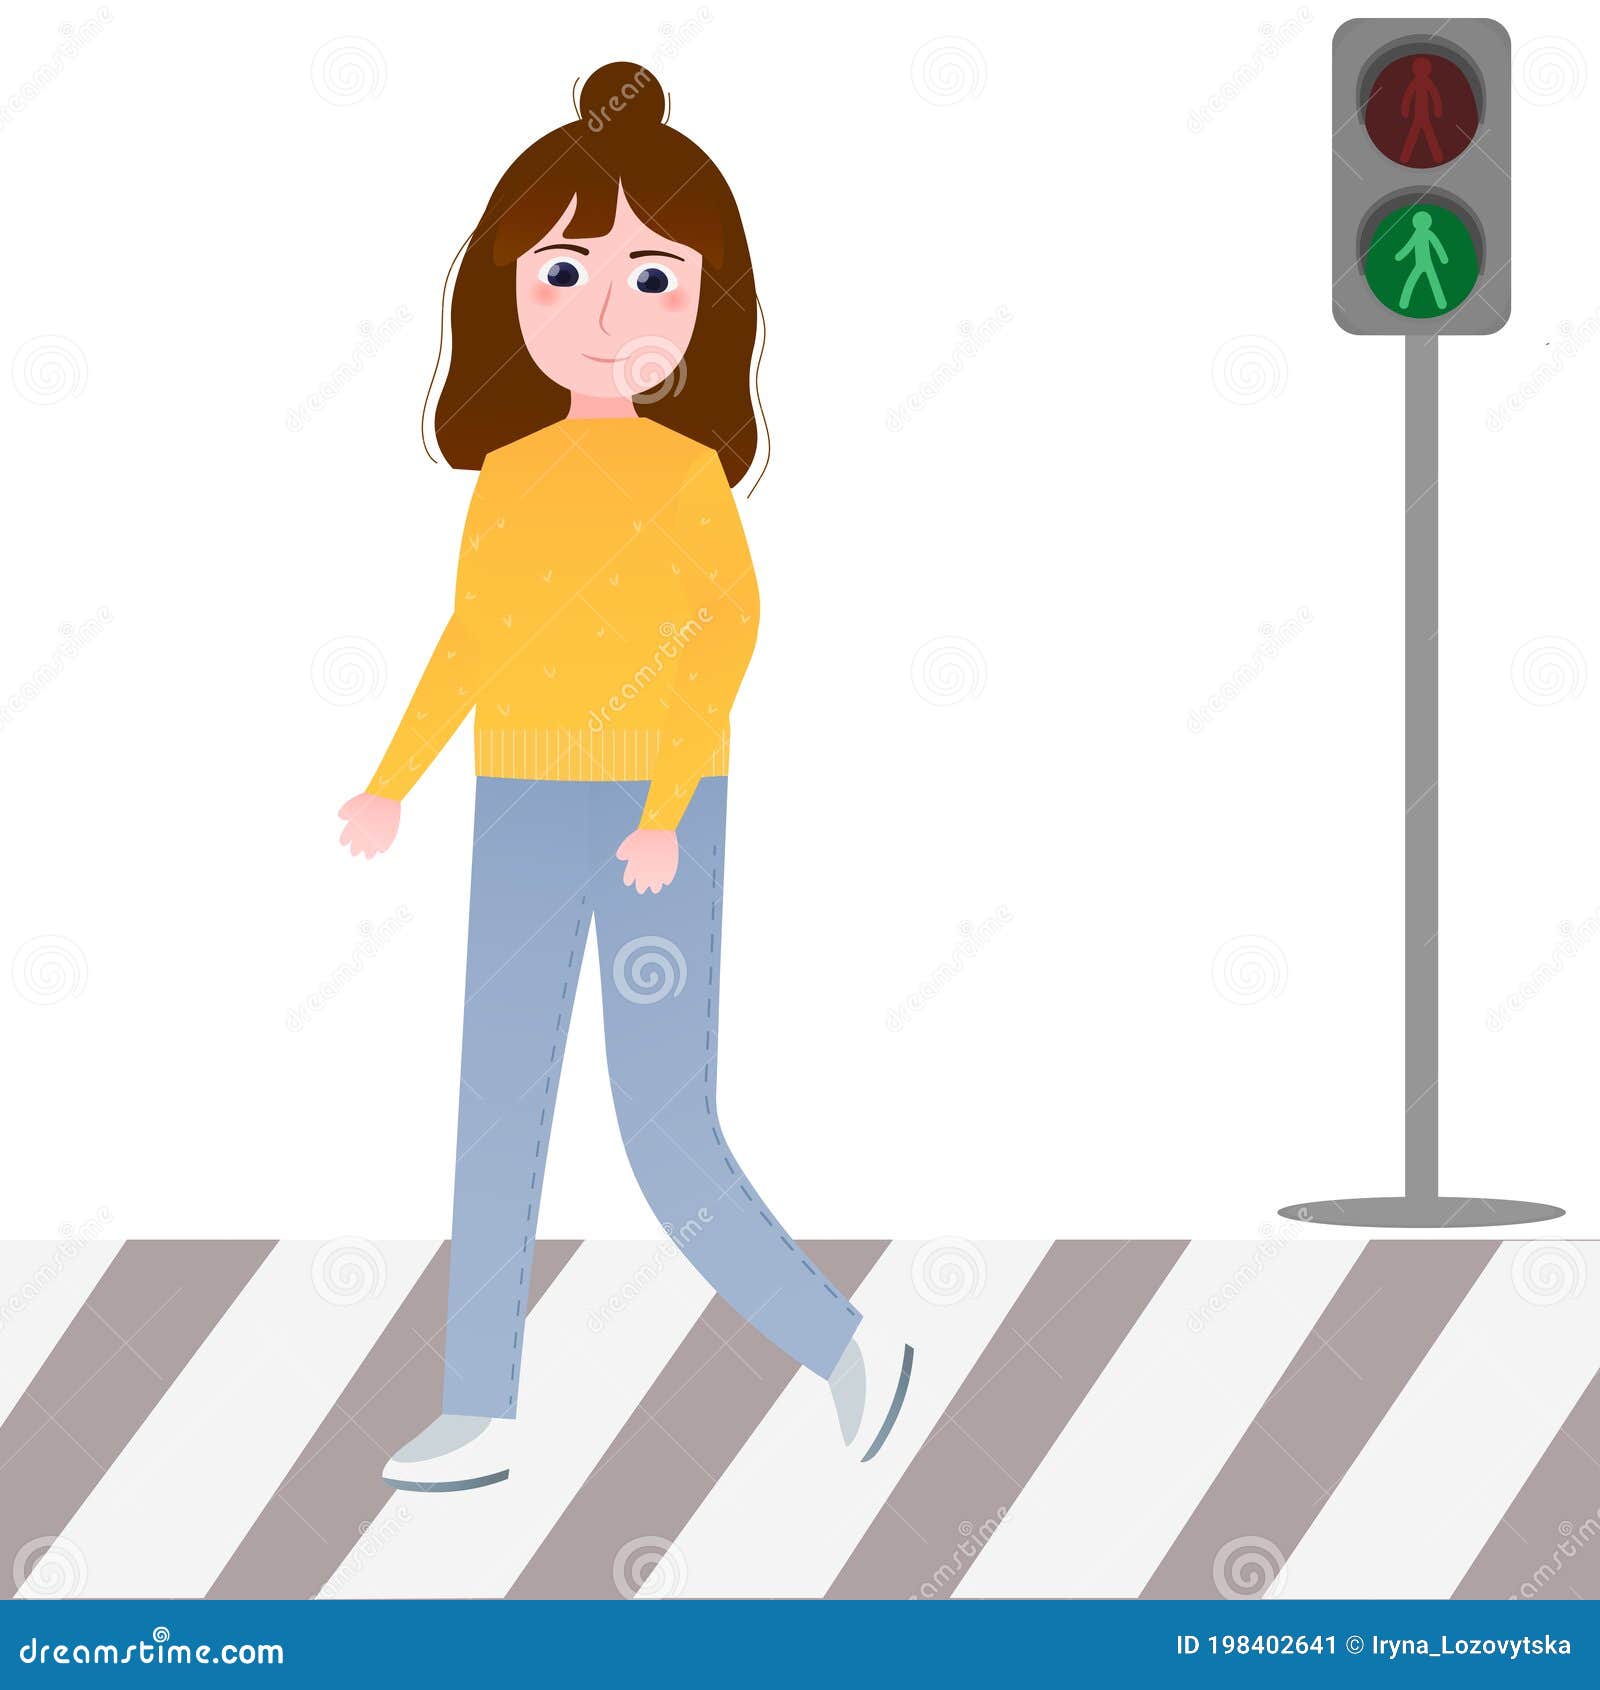 Luật đèn giao thông mang lại sự an toàn cho mọi người tham gia giao thông. Hình ảnh liên quan sẽ giúp bạn hiểu rõ hơn về các quy tắc và hành vi cần tránh khi điều khiển phương tiện.